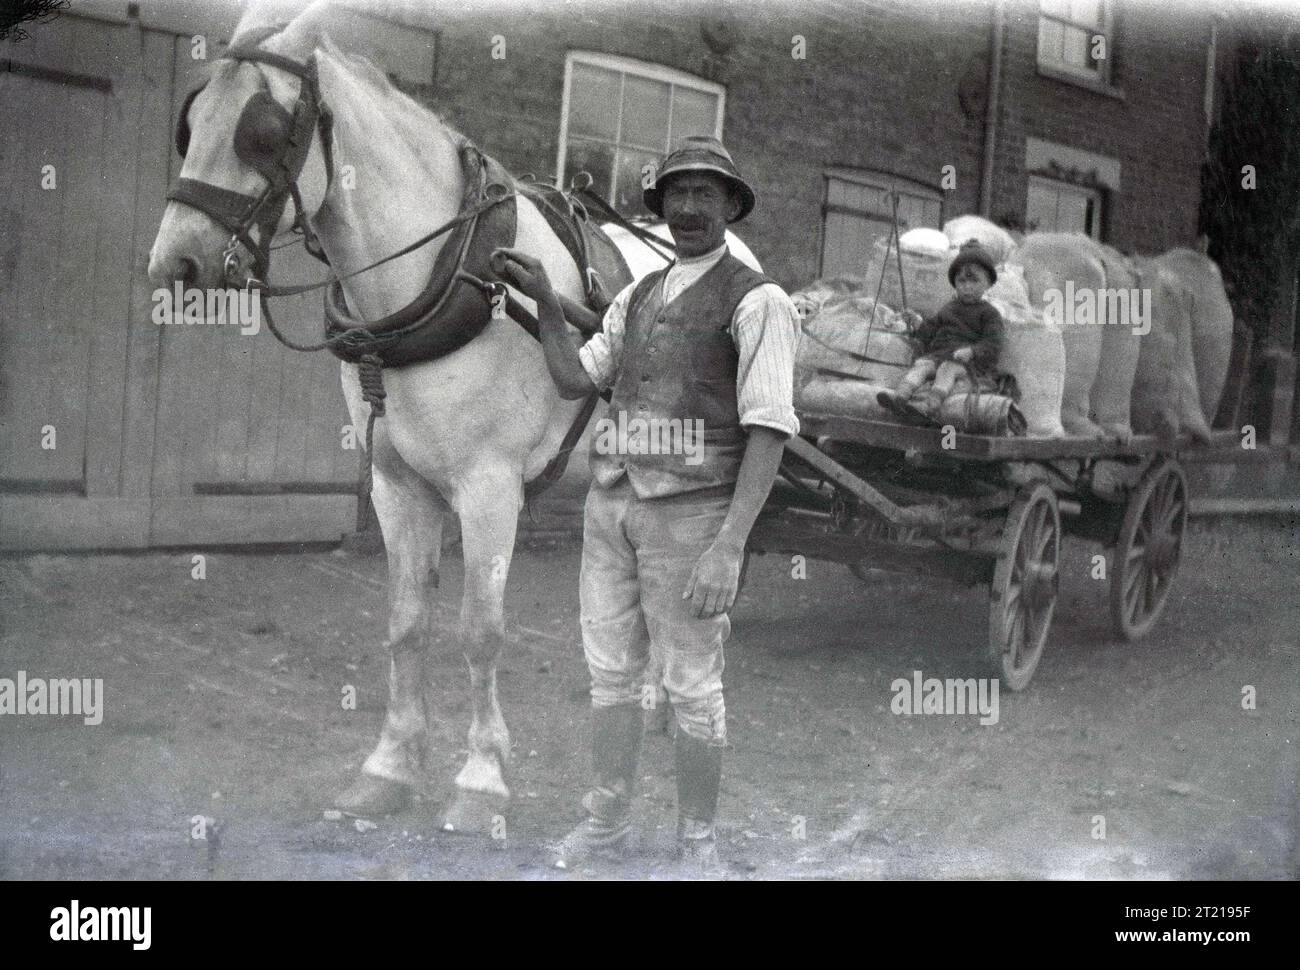 Années 1920, historique, un fermier debout avec son cheval & chariot en bois ouvert, avec un petit garçon assis près de sa cargaison de sacs de farine, Angleterre, Royaume-Uni. Banque D'Images